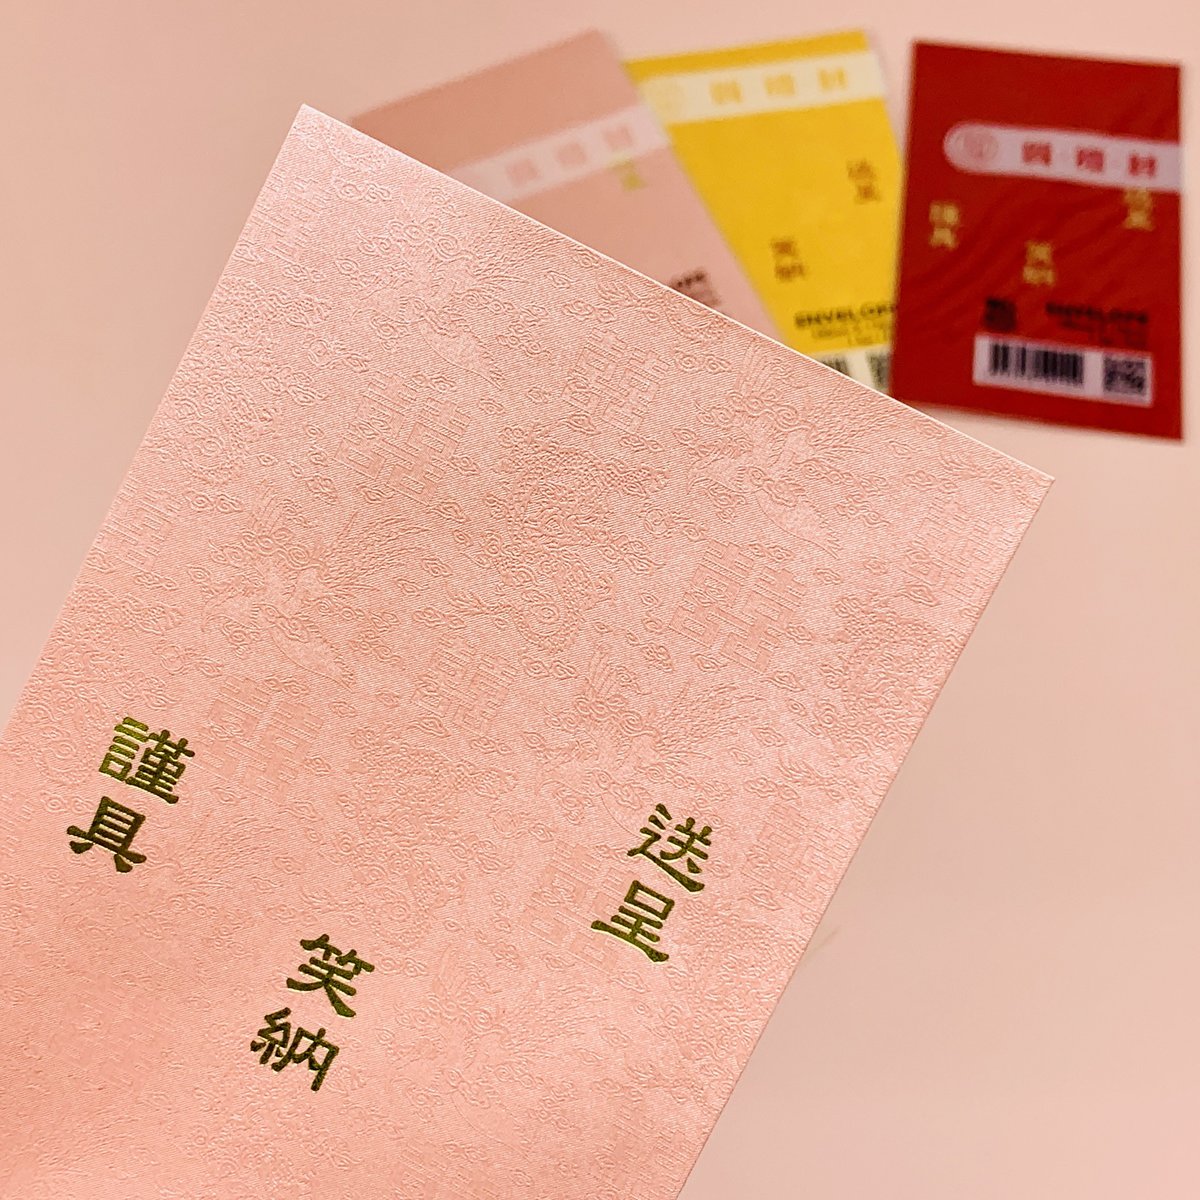 多致紙品| Xx龍‧鳳‧喜節慶賀禮人情封- 粉紅色（2套） | 顏色: 粉紅色| Hktvmall 香港最大網購平台